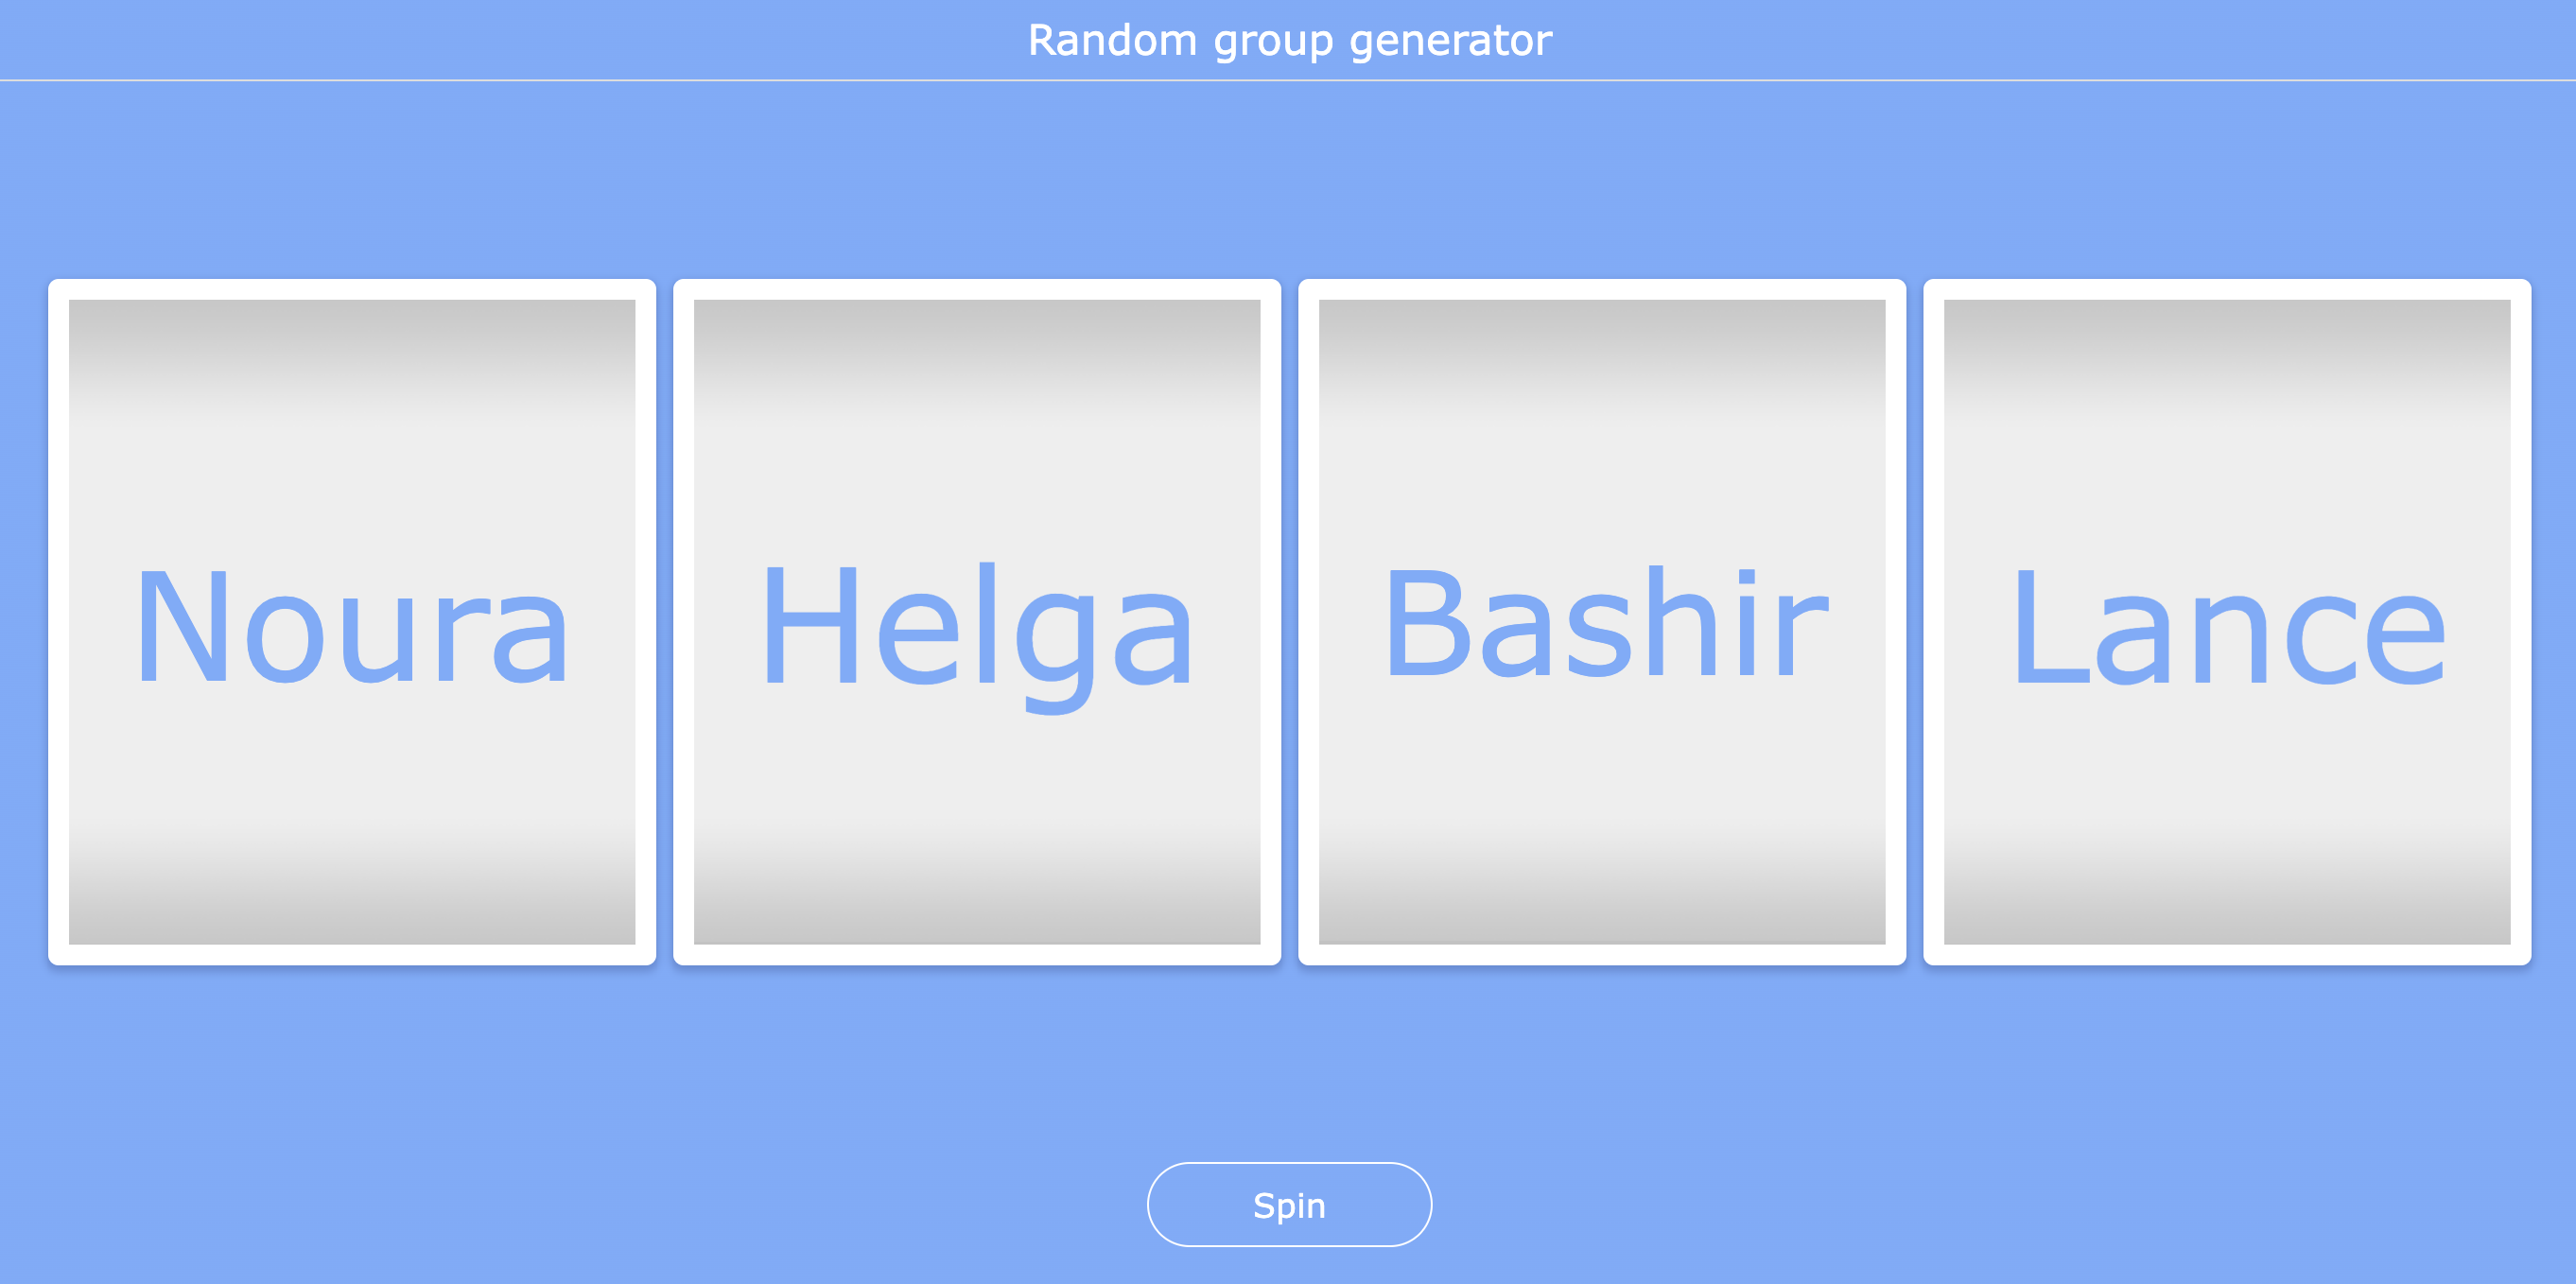 Random group generator kindergarten activity